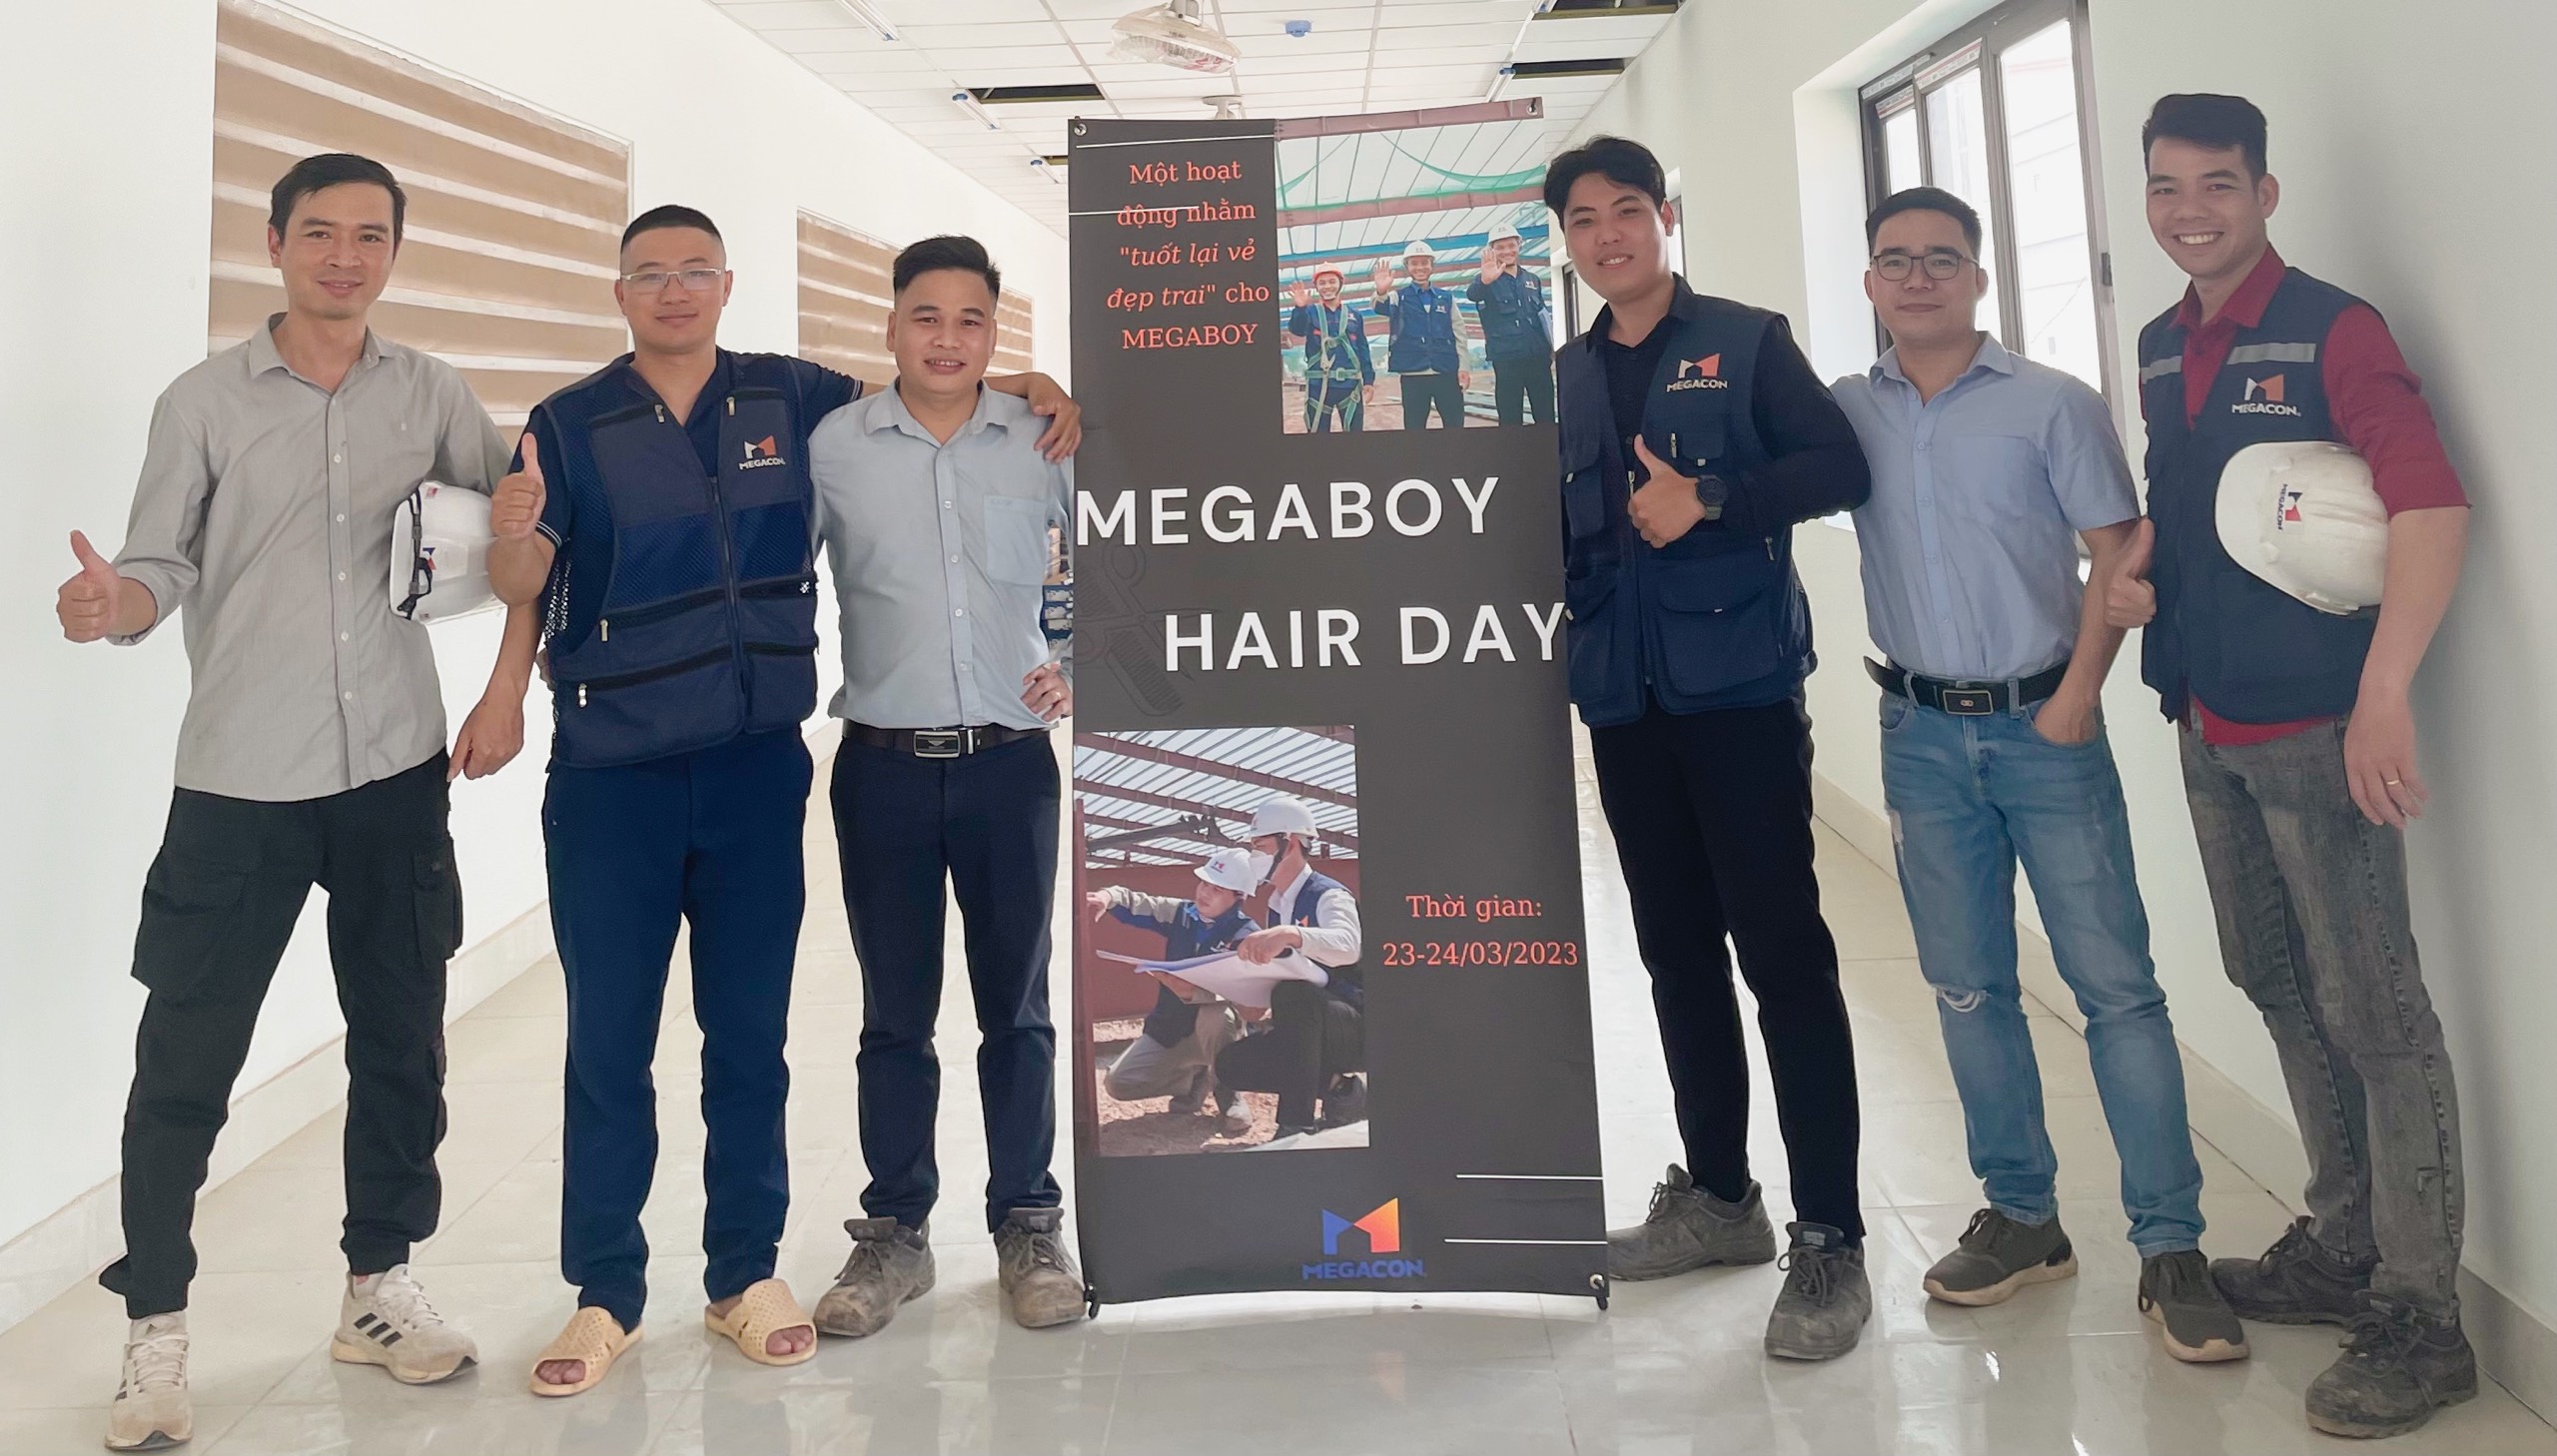 MEGABOY HAIR DAY 